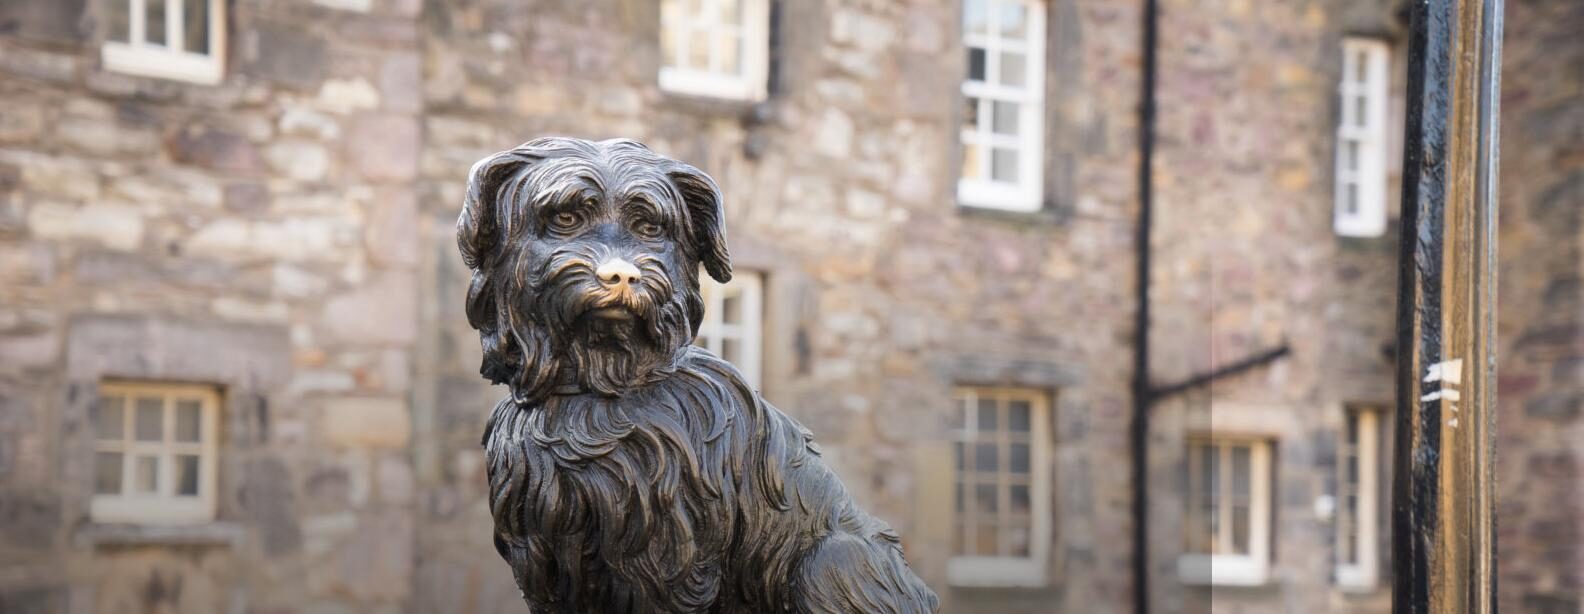 Skye Terrier monument